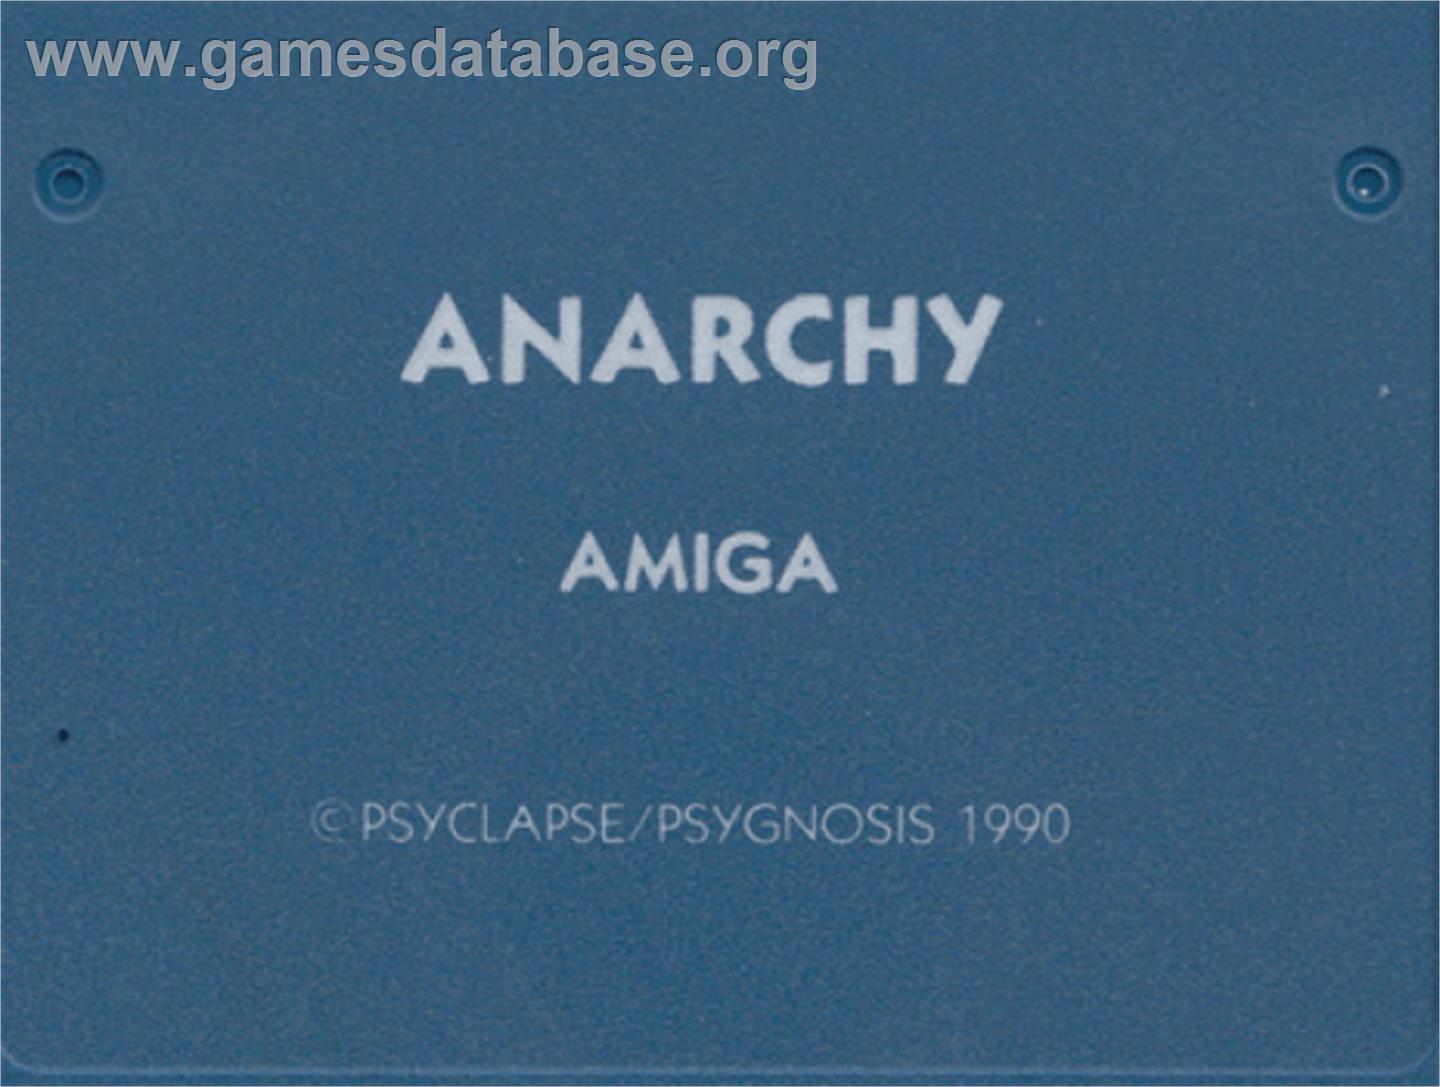 Anarchy - Commodore Amiga - Artwork - Cartridge Top